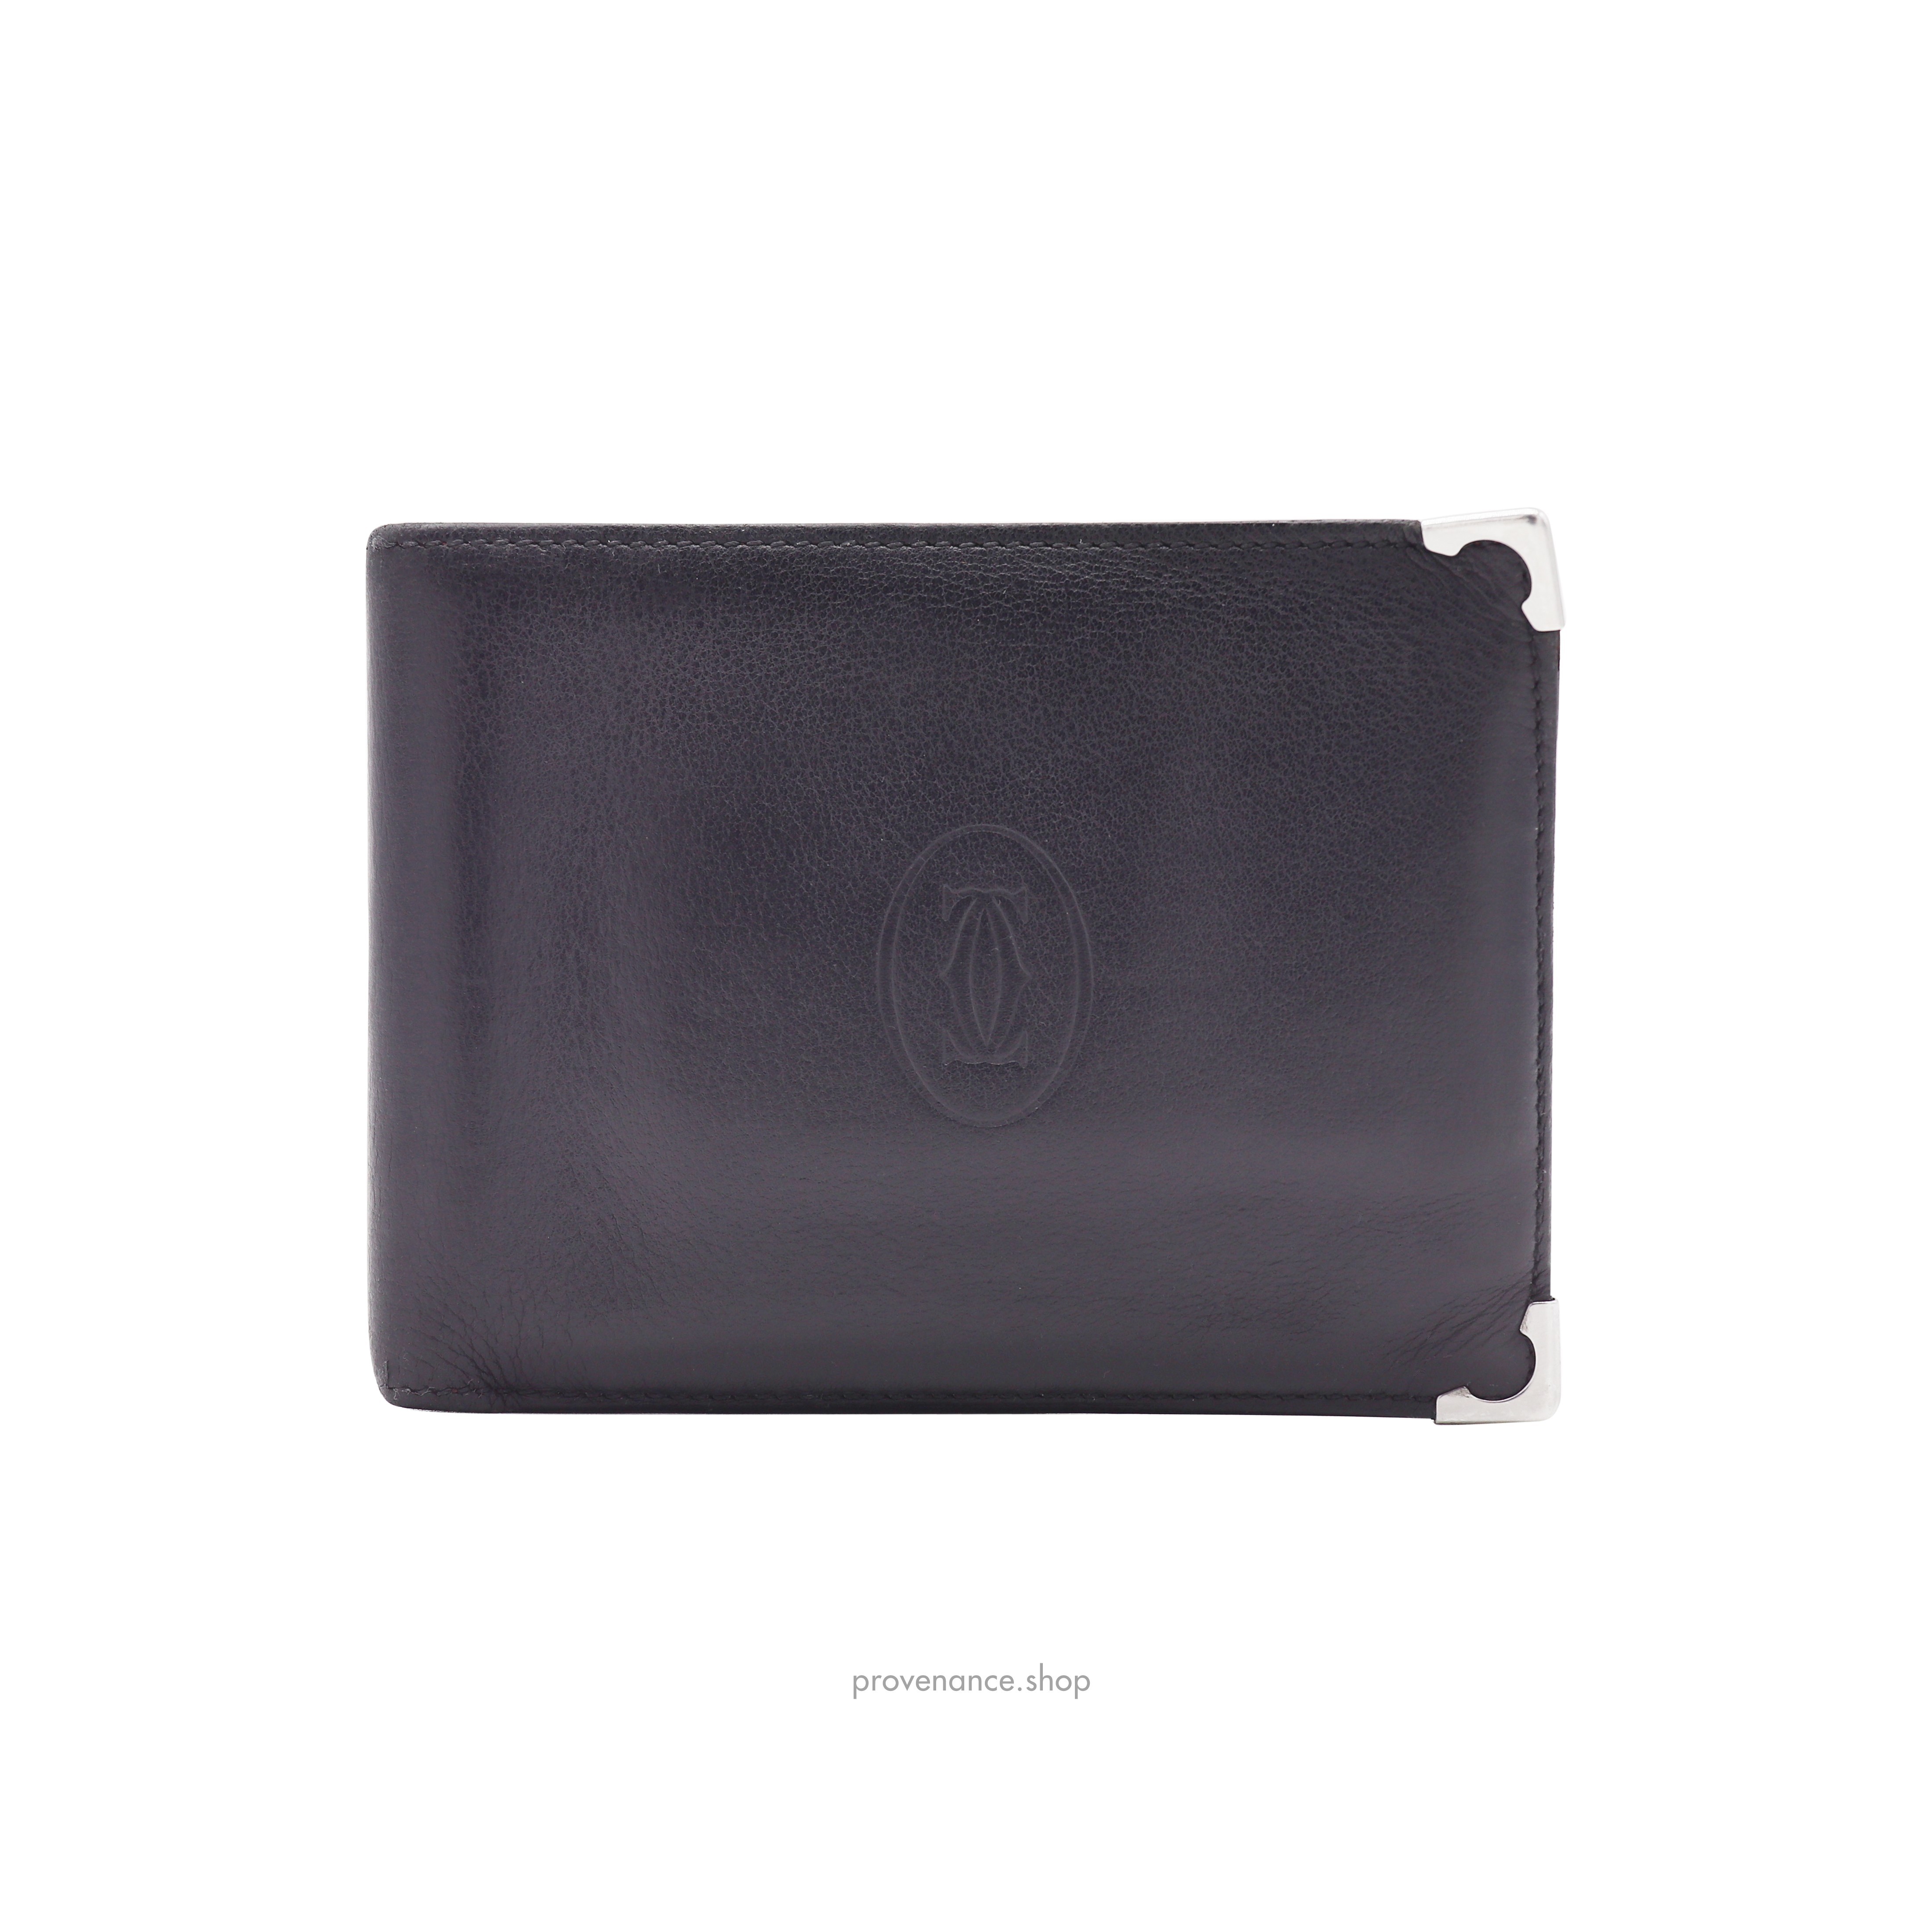 Cartier Bifold Wallet - Black Calfskin Leather - 1